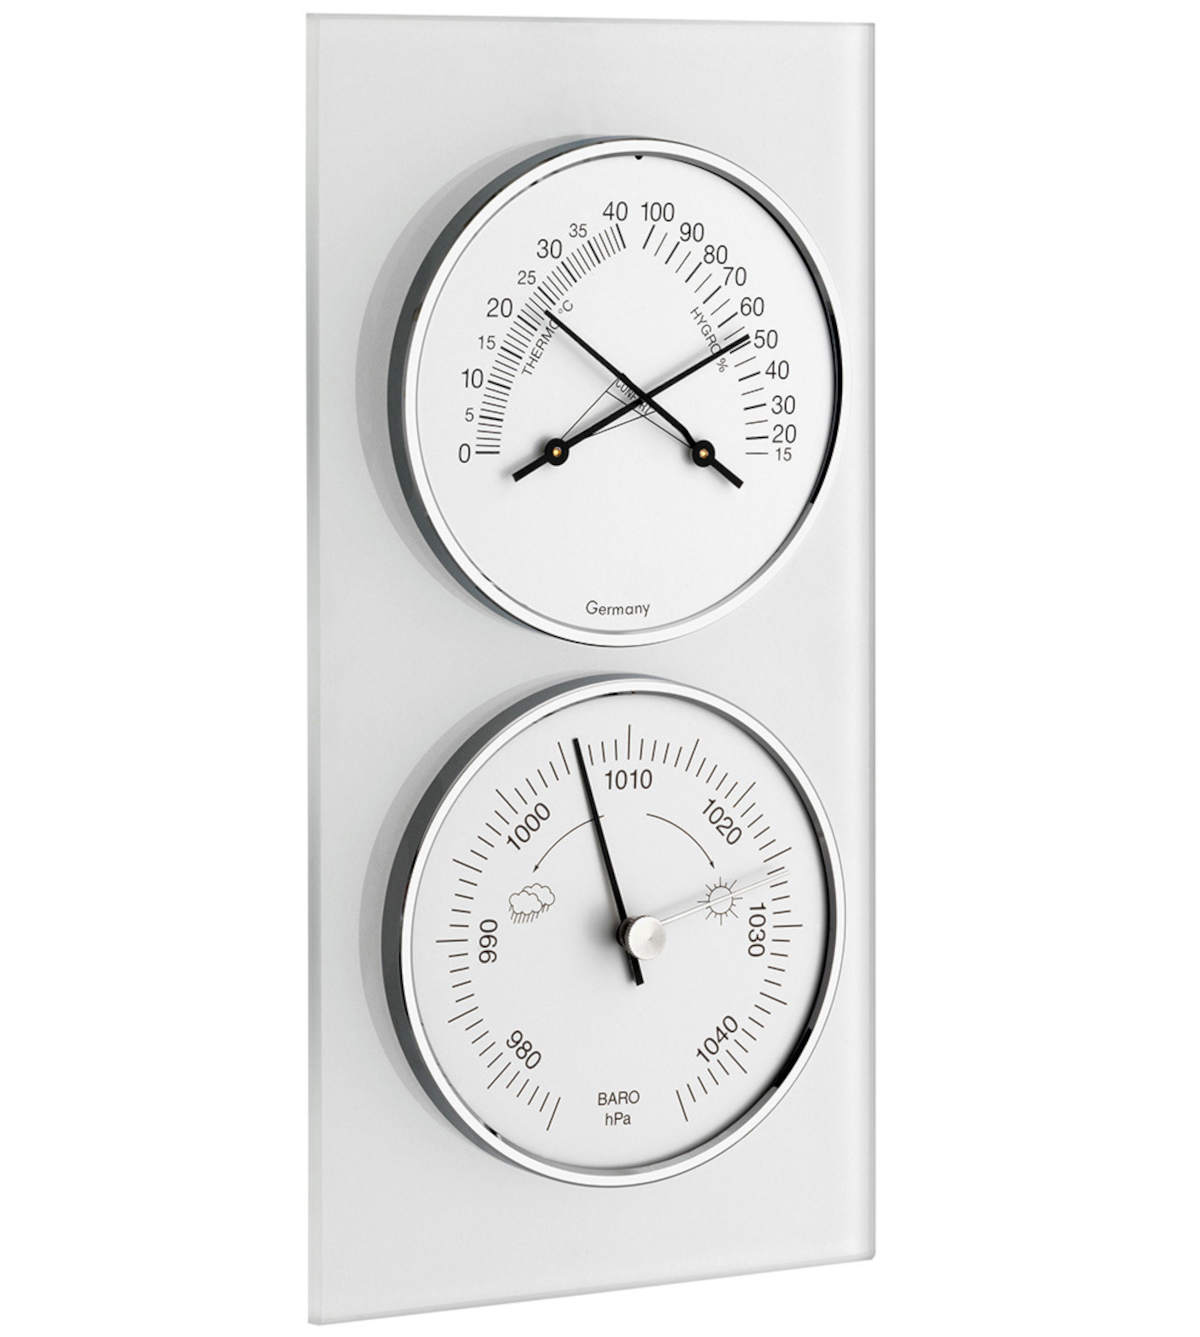 Baromètre Type avec thermomètre et hygromètre, Station météo, pression  barométrique M - AliExpress